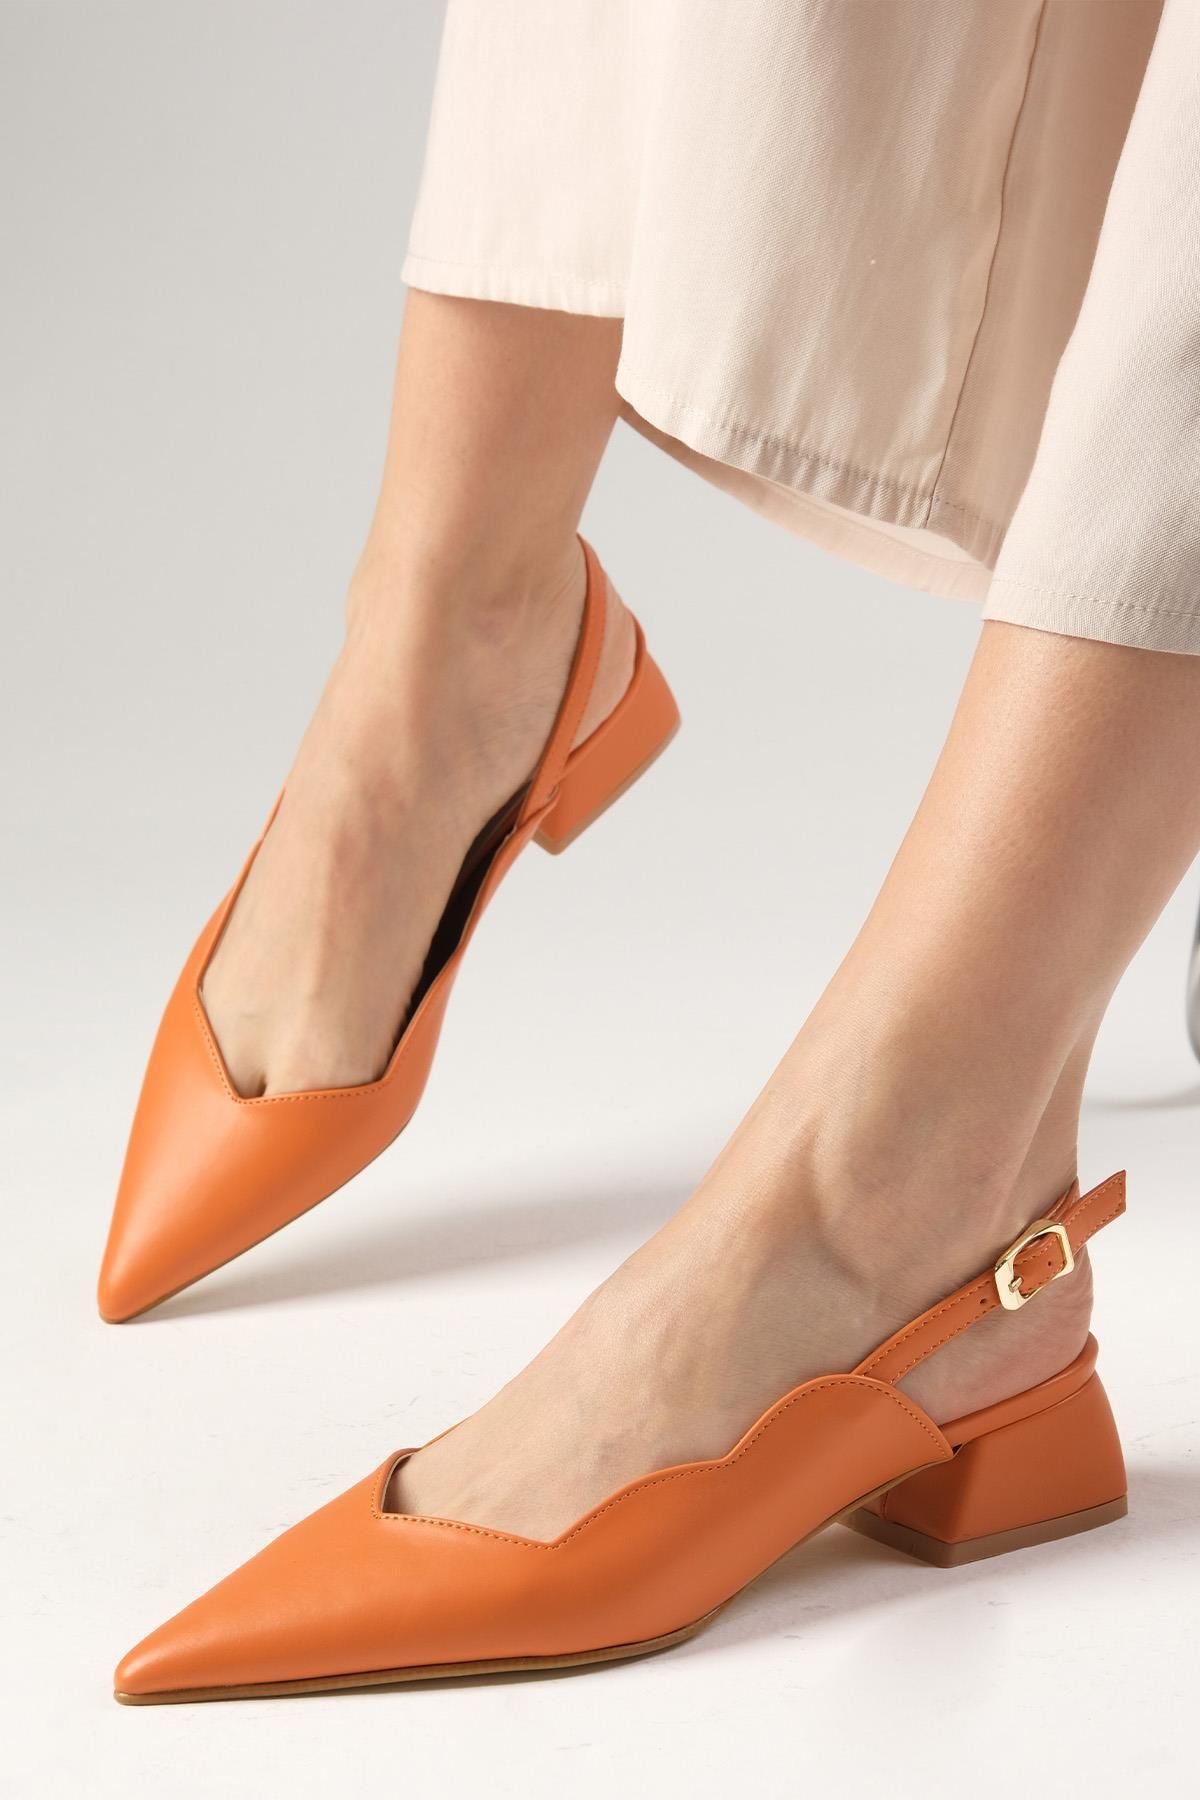 Mio Gusto Marsha Turuncu Renk Arkası Açık Yandan Tokalı Kısa Topuklu Kadın Ayakkabı